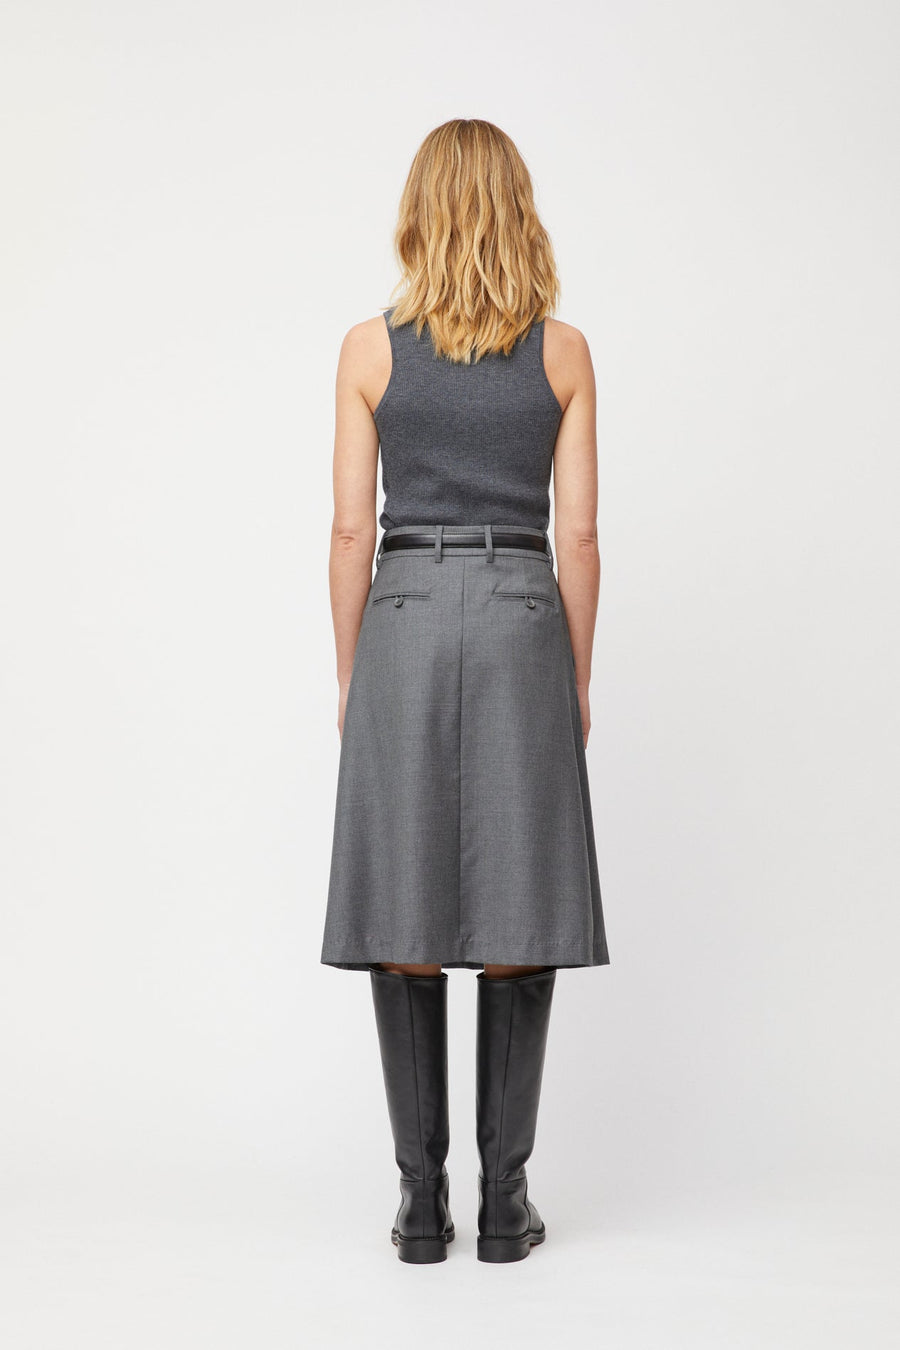 Côte d´Azur Skirt